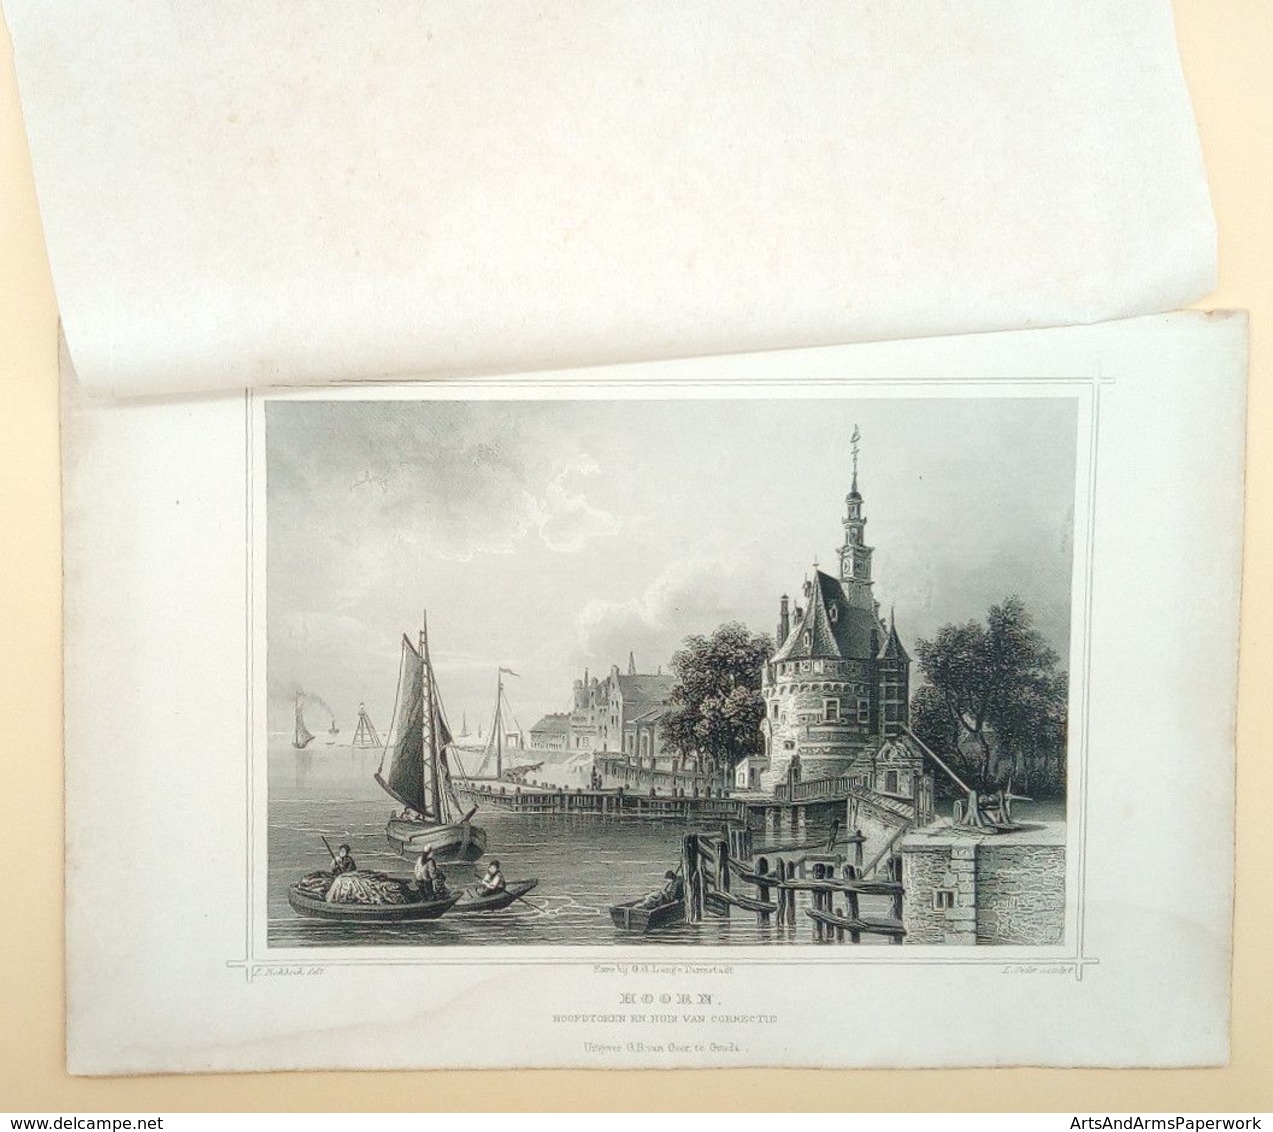 Hoorn, Hoofdtoren En Huis Van Correctie 1858/ Hoorn (NL) Main Tower And Disciplinary House 1858. Rohbock, Oeder - Arte